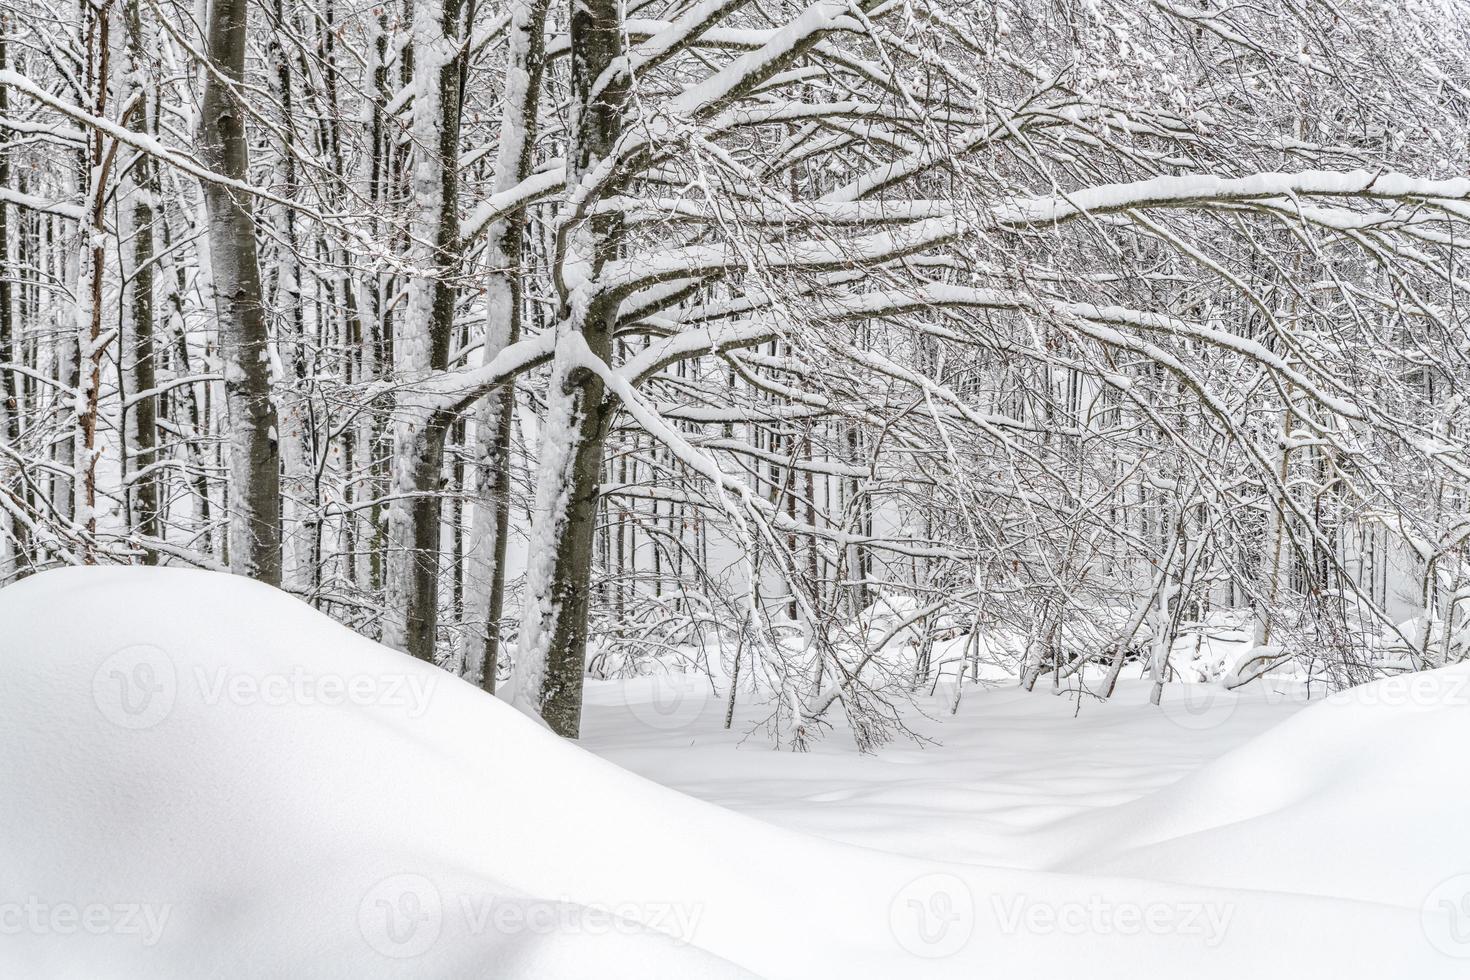 schemering en kleuren van het besneeuwde bos. sneeuw en kou. foto